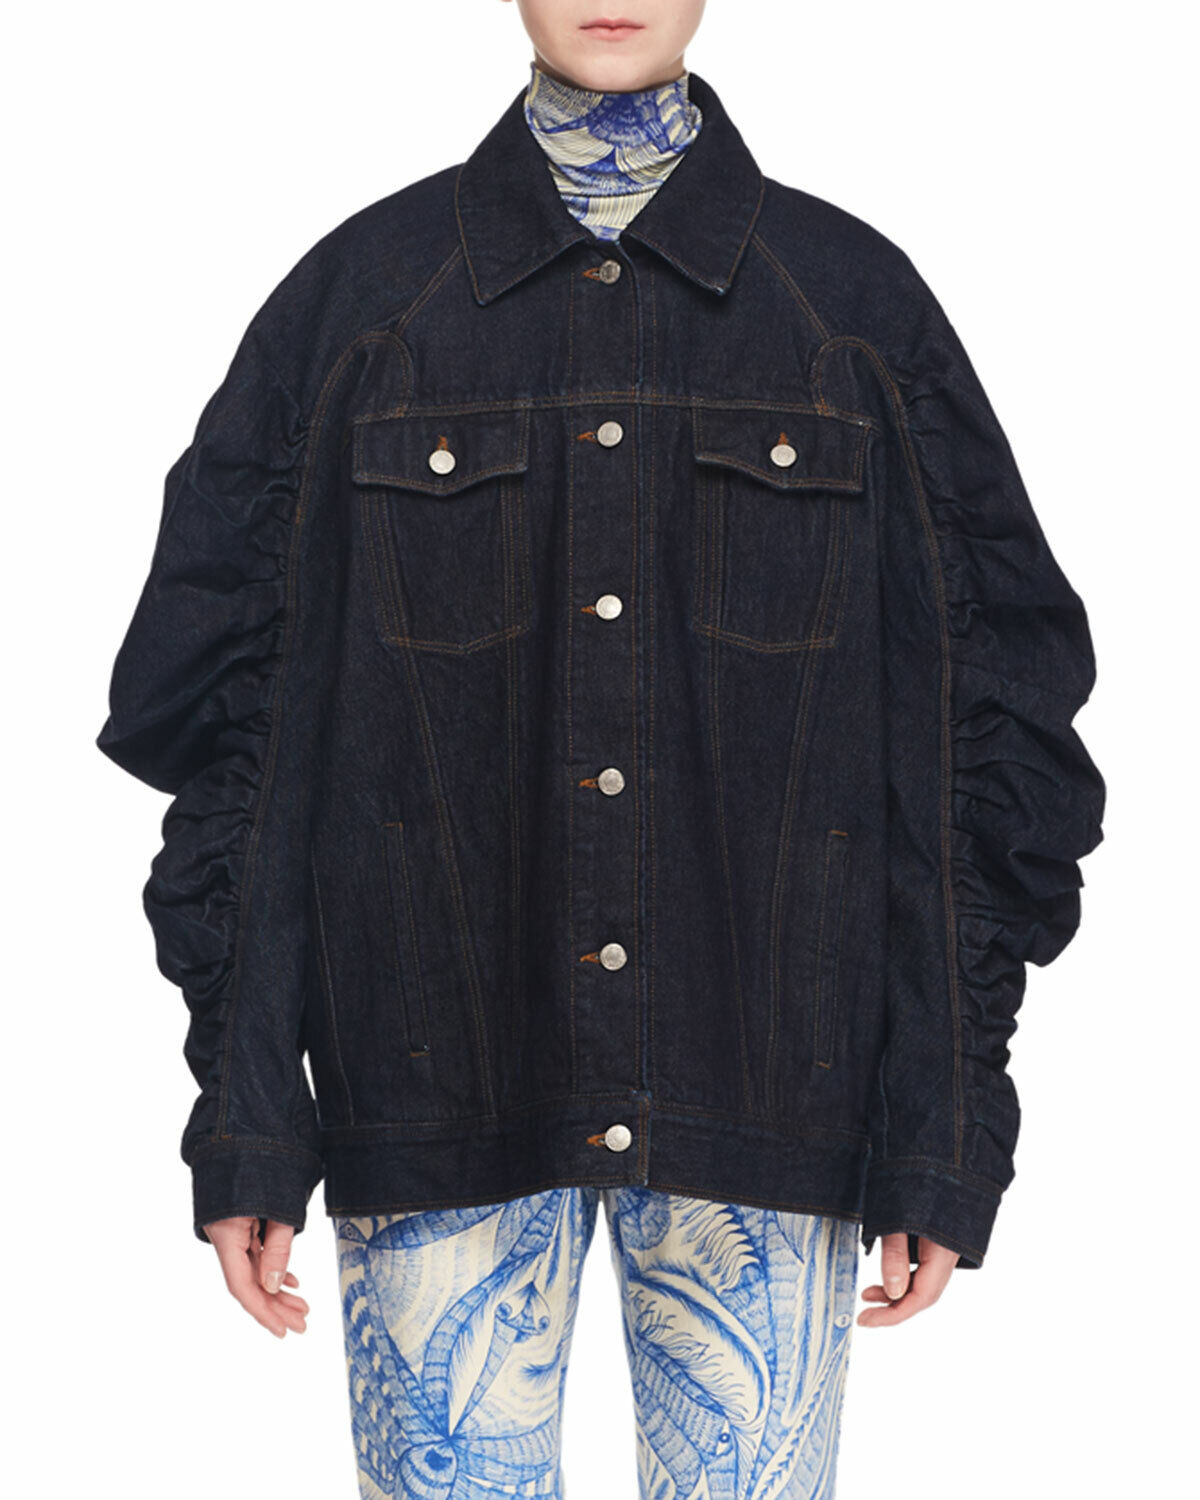 DRIES VAN NOTEN ruched-sleeve oversized denim jean jacket coat M 40 bergdorf